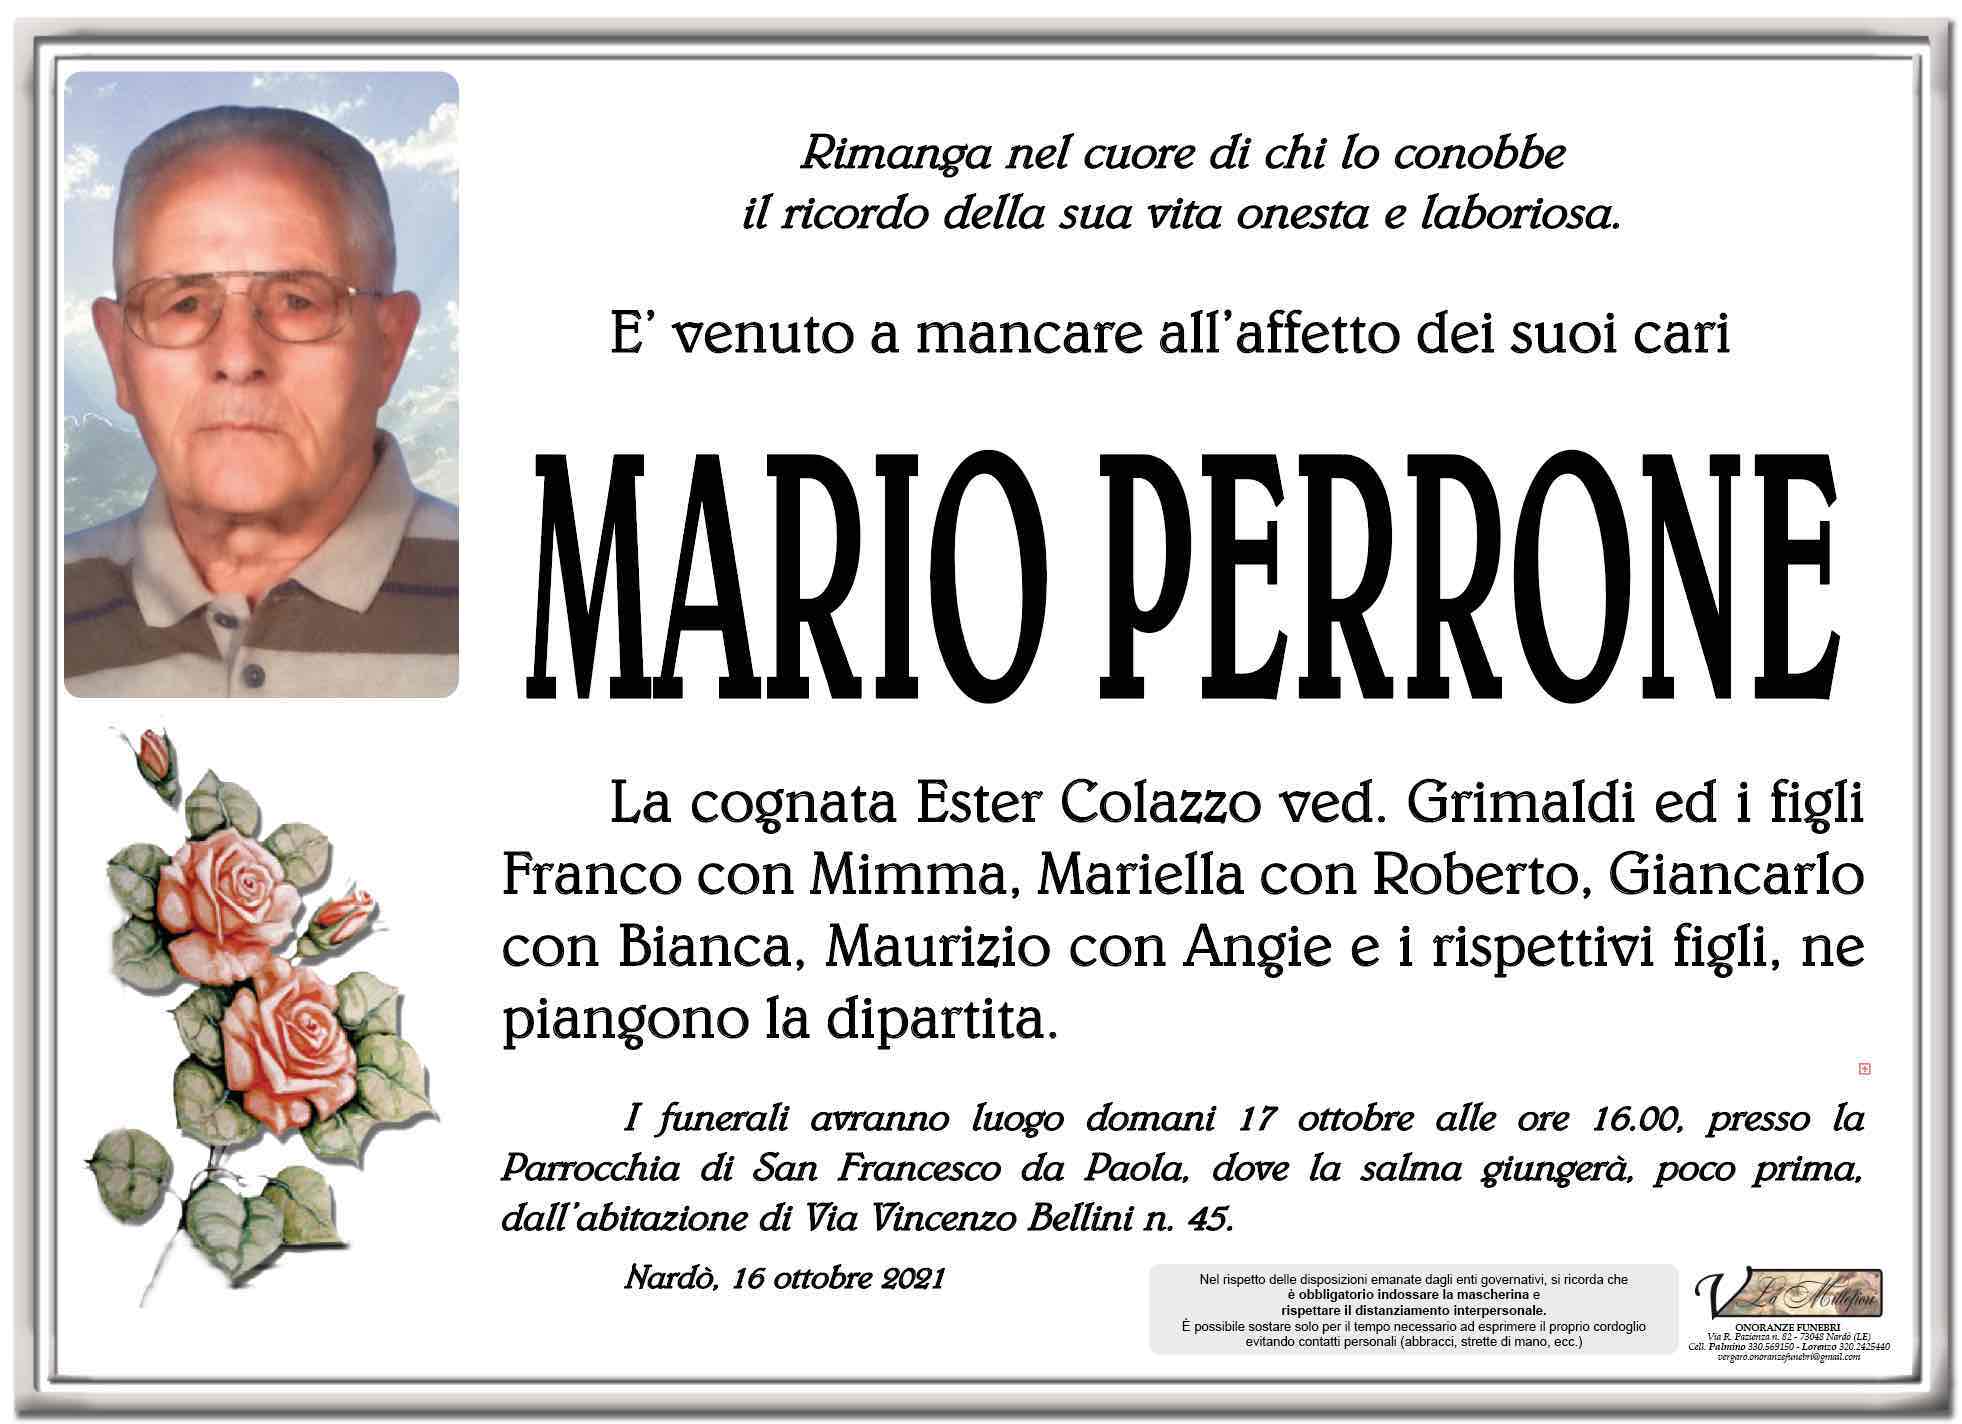 Mario Perrone